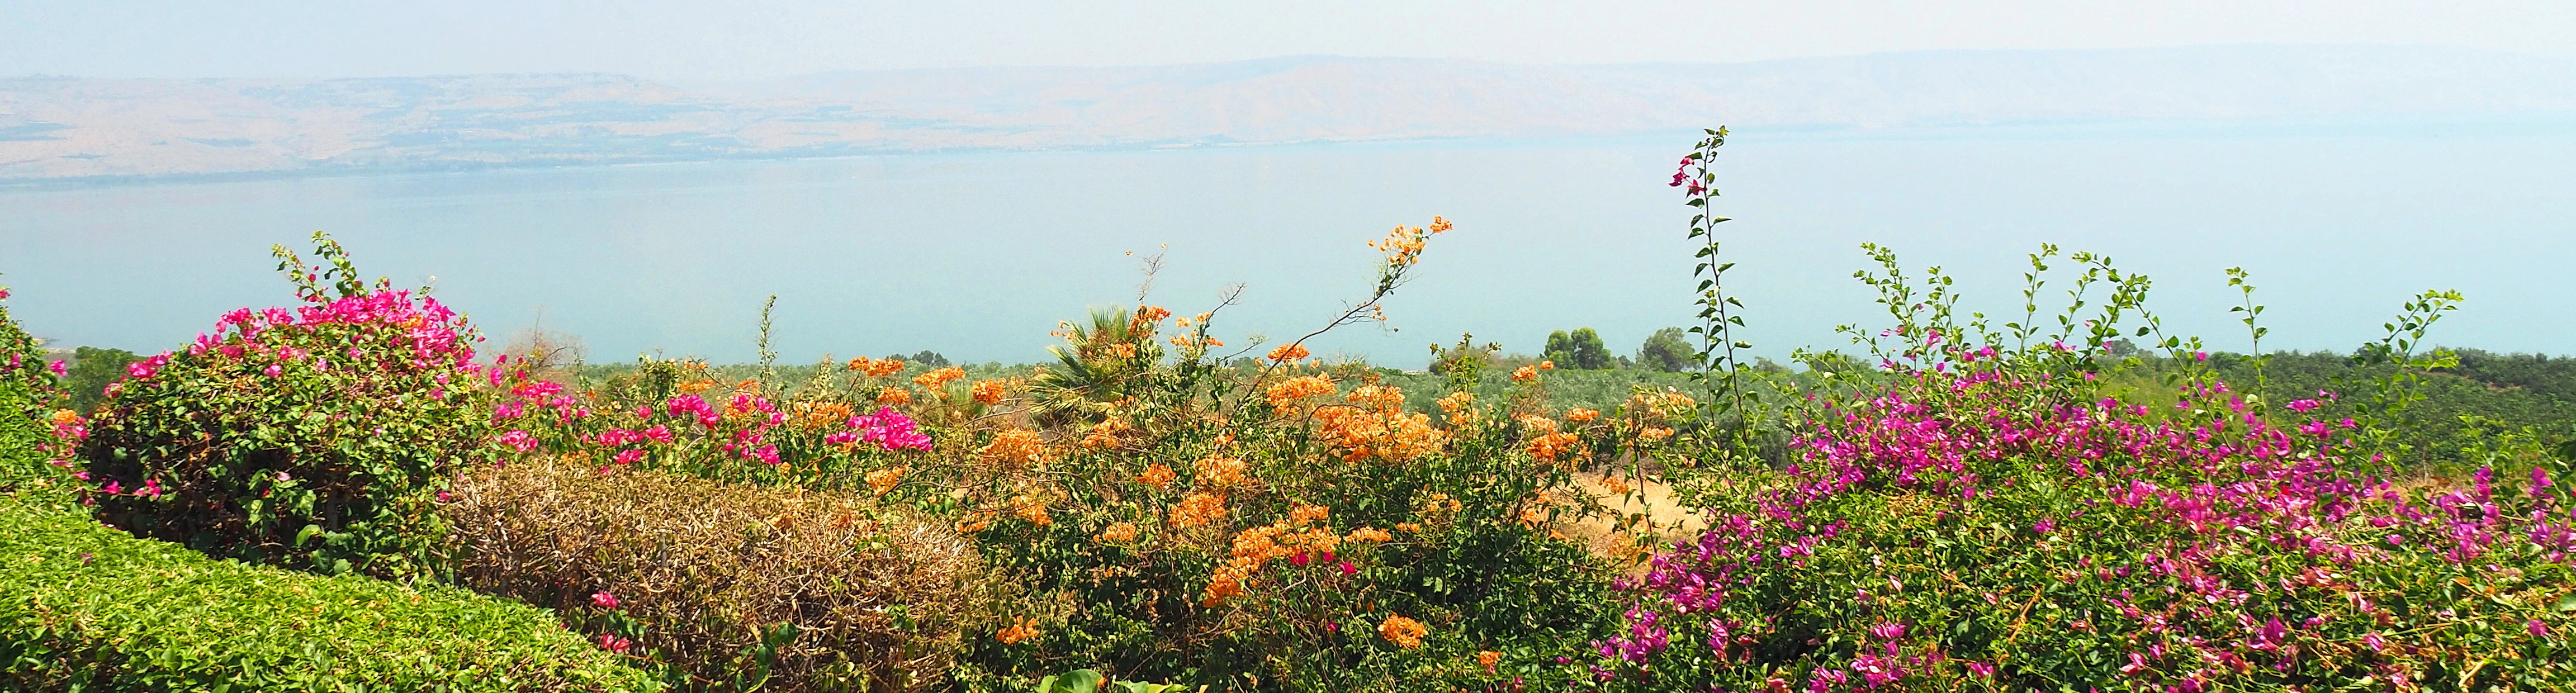 山上の垂訓教会近くから見た8月のガリラヤ湖畔の写真。色とりどりのブーゲンビリヤが湖畔を飾り、穏やかなガリラヤ湖面がその後ろに広がっています。湖を超えてヨルダンのなだらか山並みがはるかに見渡せます。